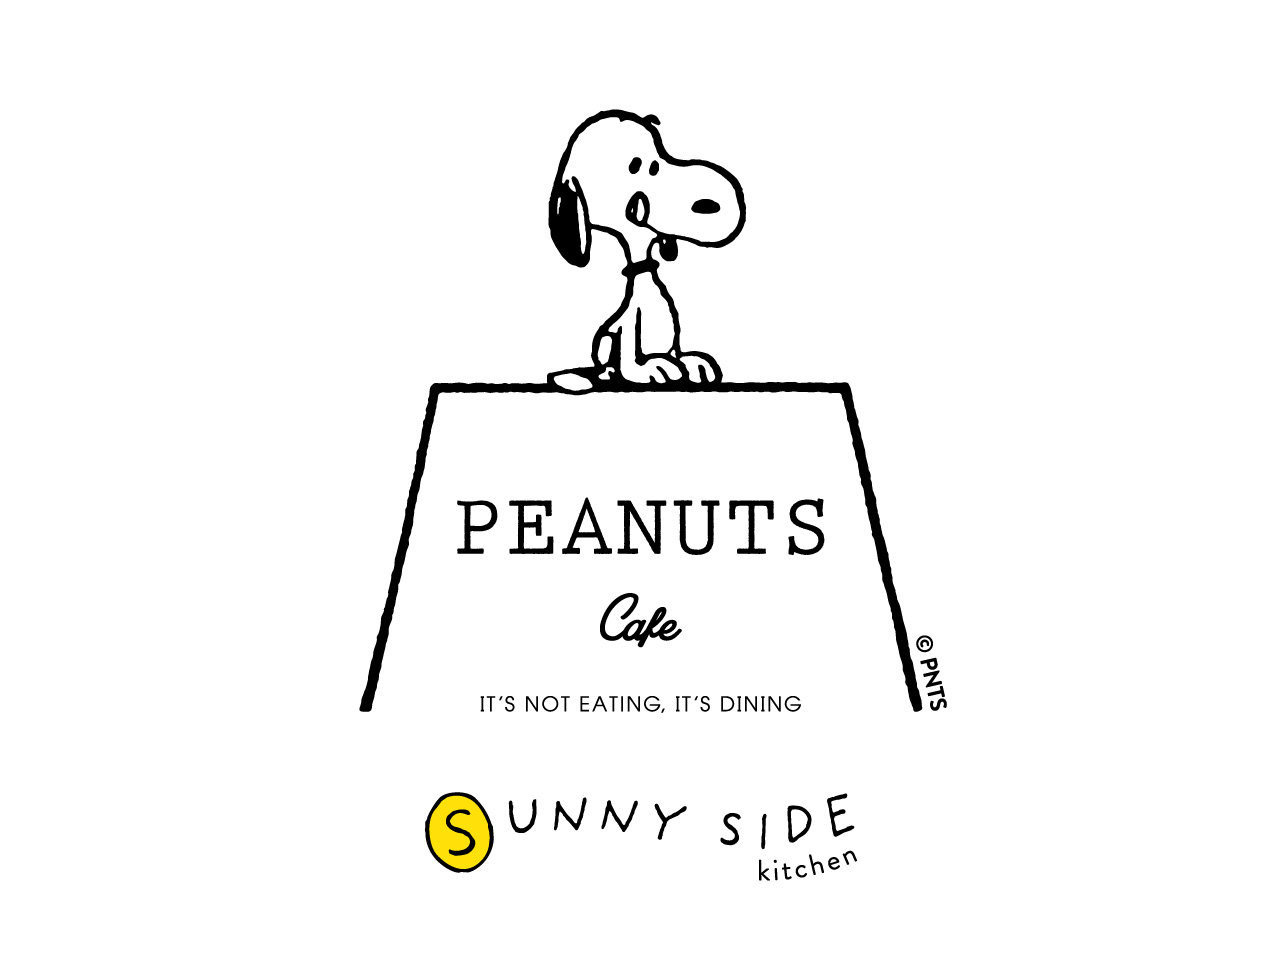 わたしの1日をしあわせにする すこやかな食の時間を ピーナッツ カフェの新業態 Peanuts Cafe Sunny Side Kitchen が原宿 に21年7月末オープン 株式会社ポトマックのプレスリリース